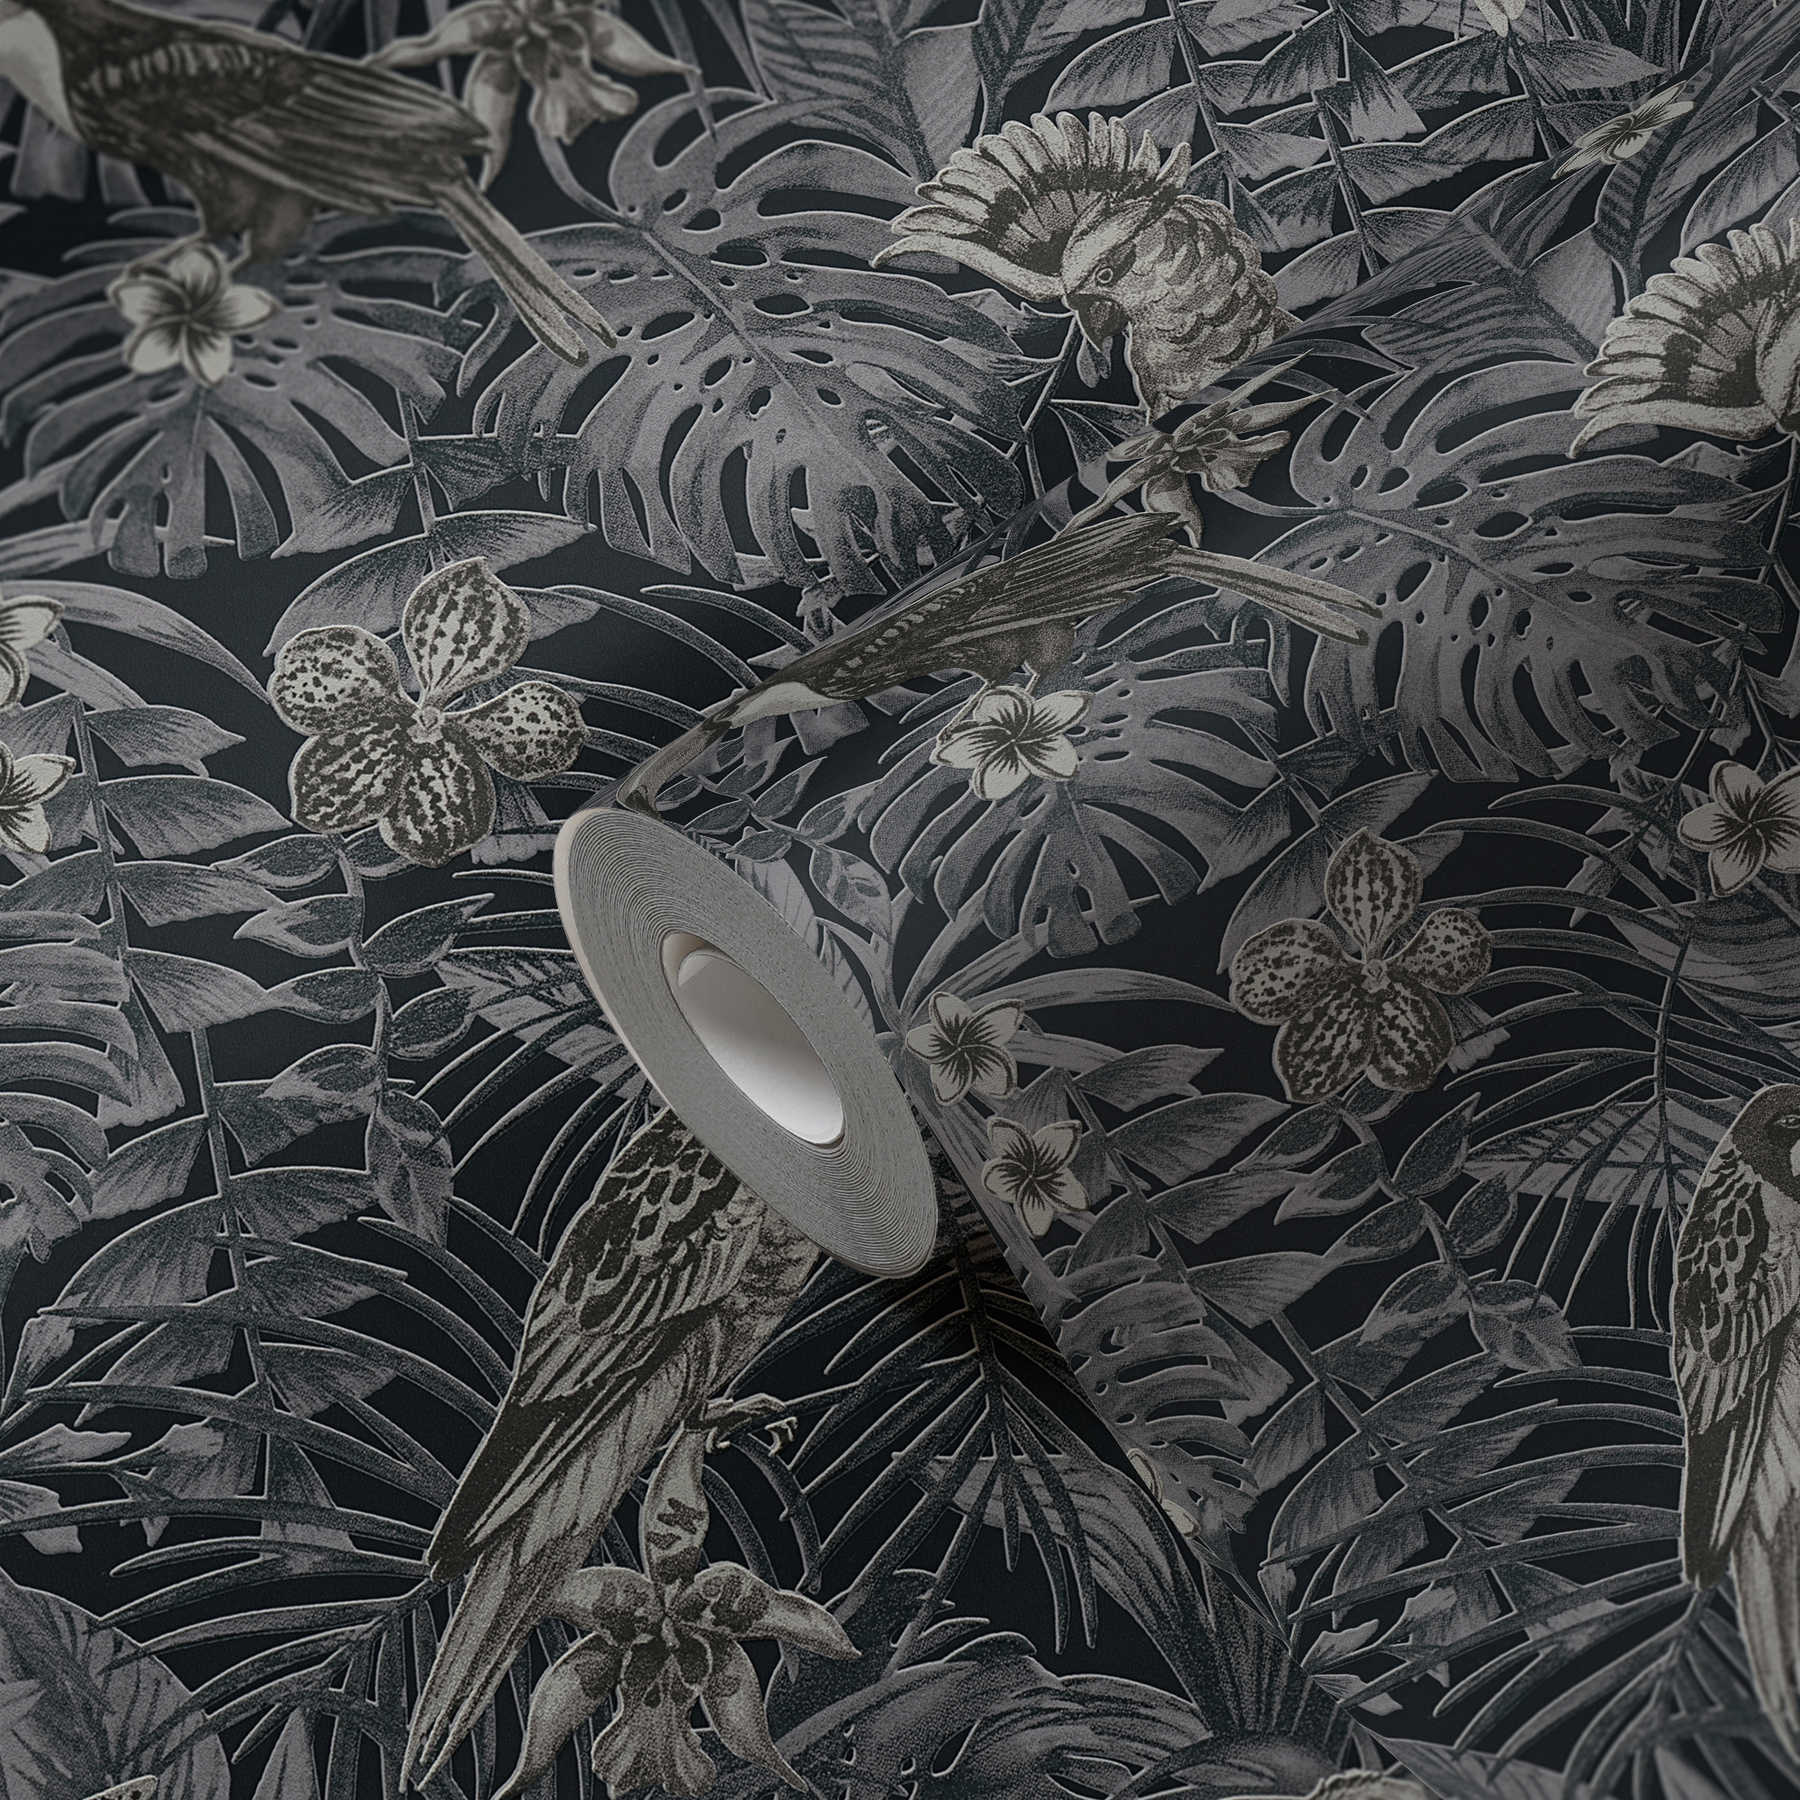             Papel pintado exótico pájaros, flores y hojas tropicales - gris, negro, crema
        